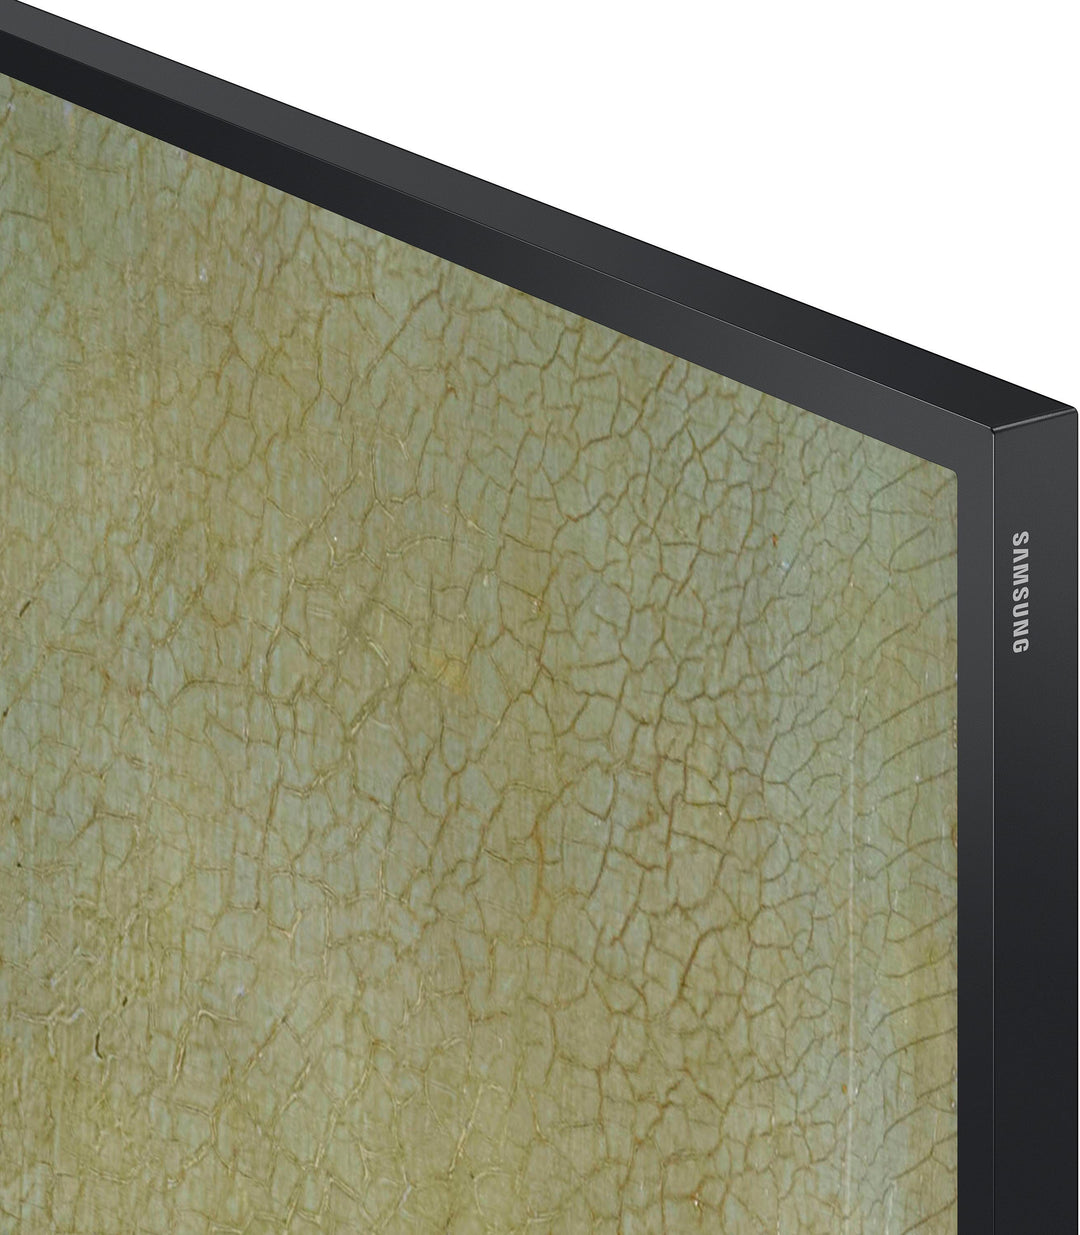 Samsung - 65" Class The Frame QLED 4k Smart Tizen TV_11